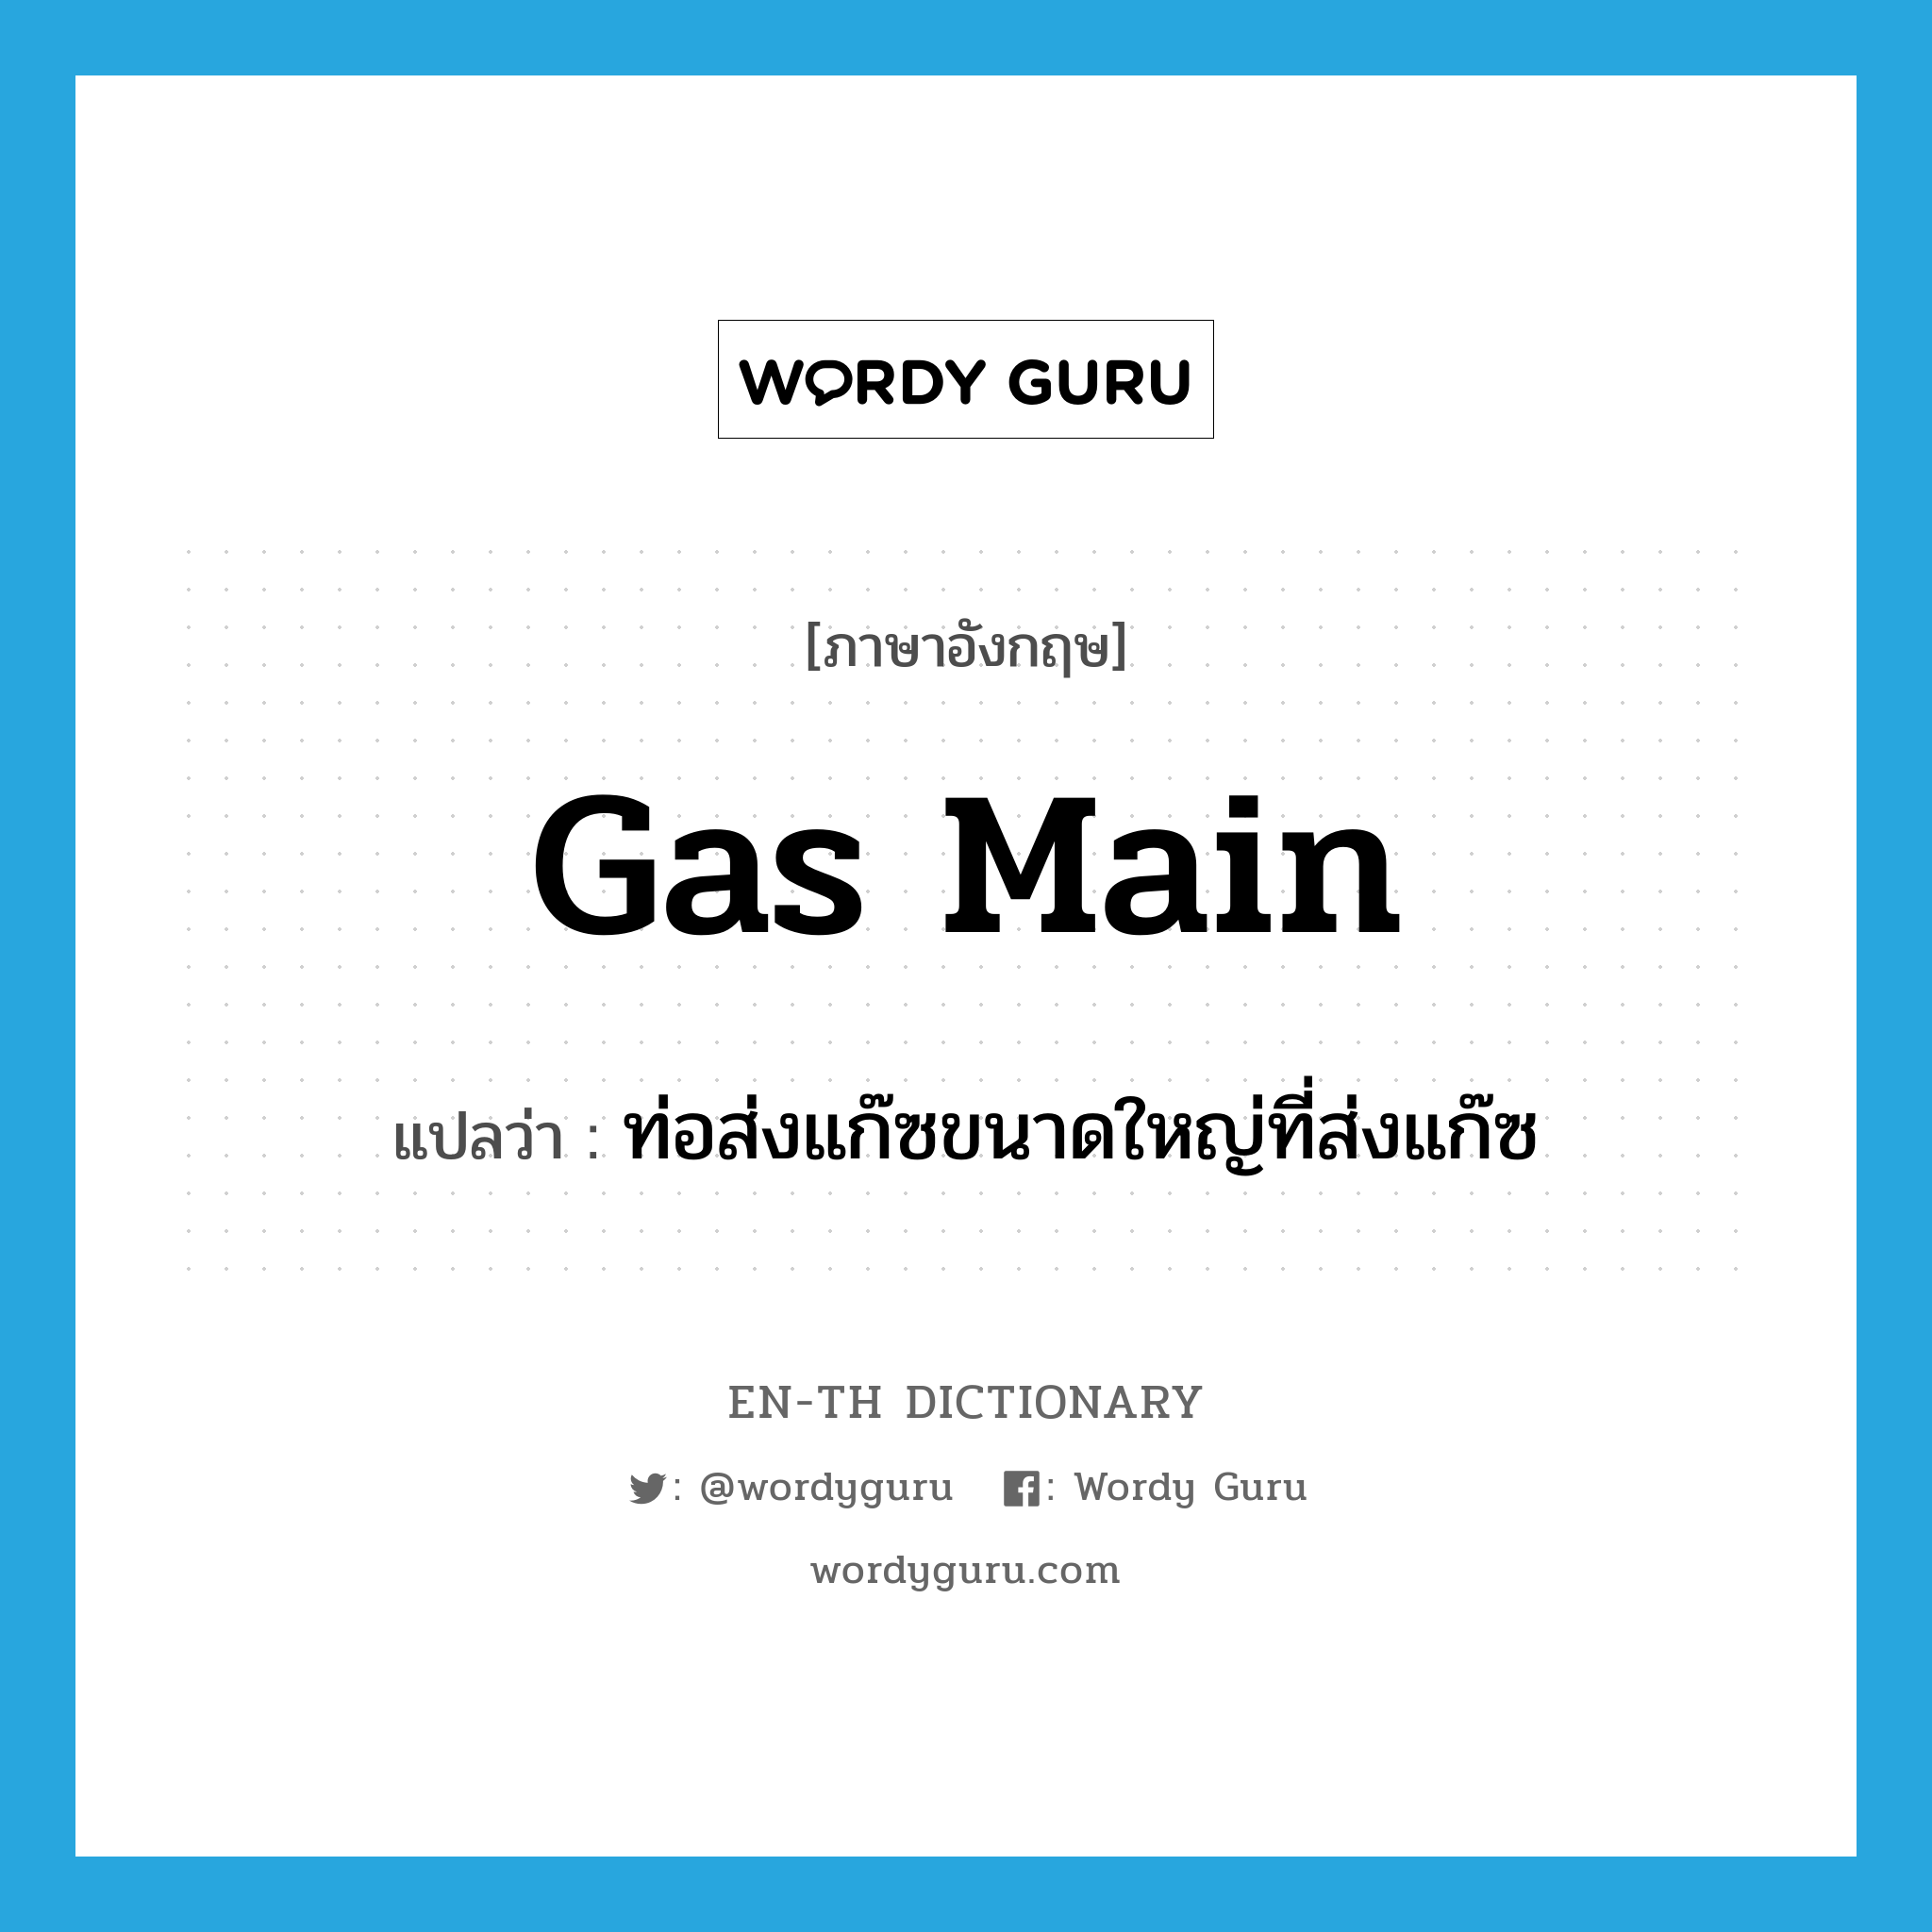 gas main แปลว่า?, คำศัพท์ภาษาอังกฤษ gas main แปลว่า ท่อส่งแก๊ซขนาดใหญ่ที่ส่งแก๊ซ ประเภท N หมวด N